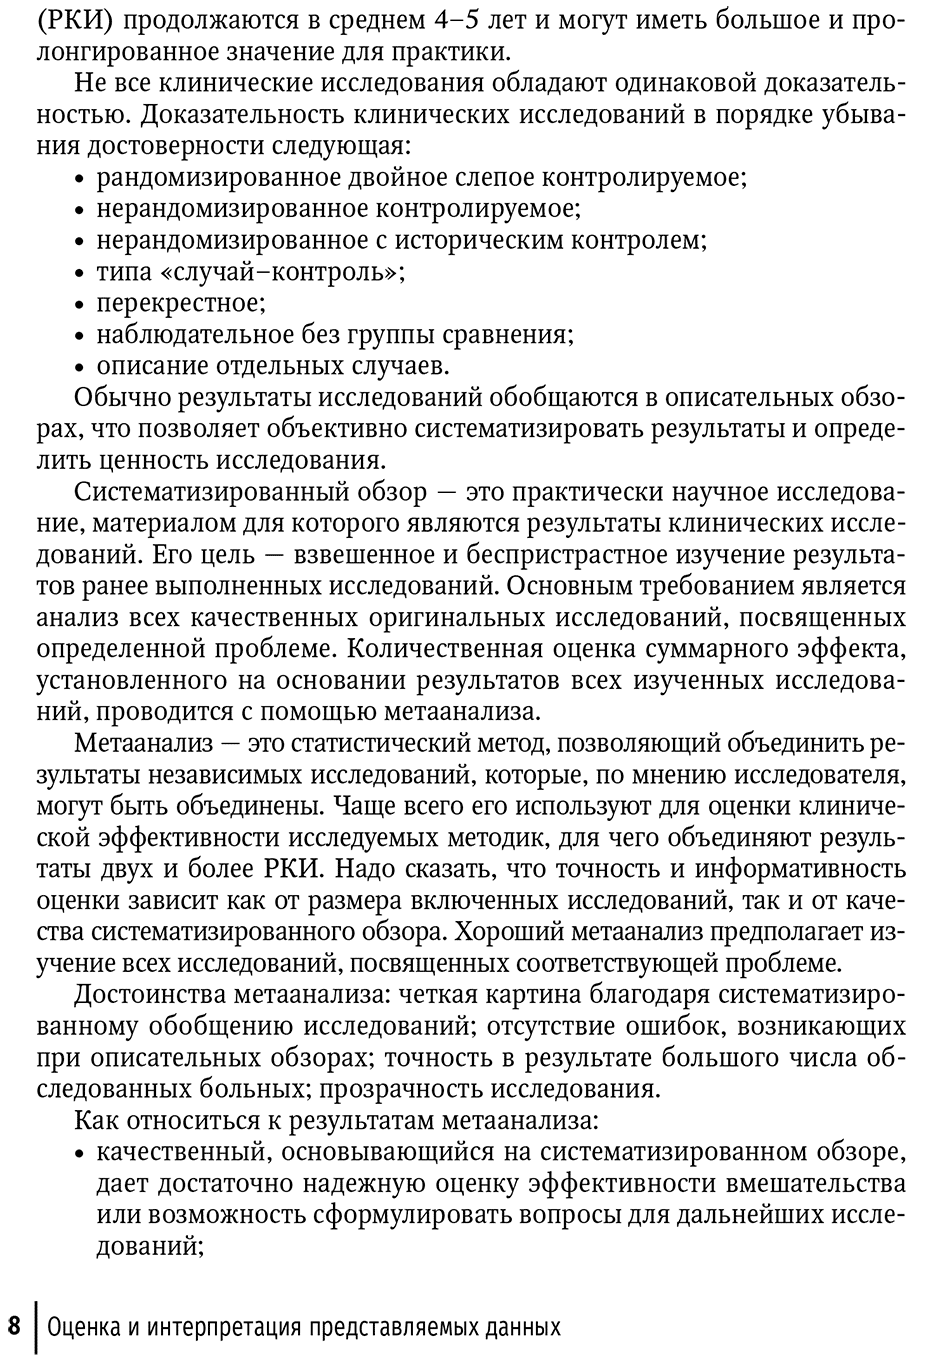 Пример страницы из книги "Периоперационная коррекция кровопотери: руководство для врачей" - Голубцов В. В.